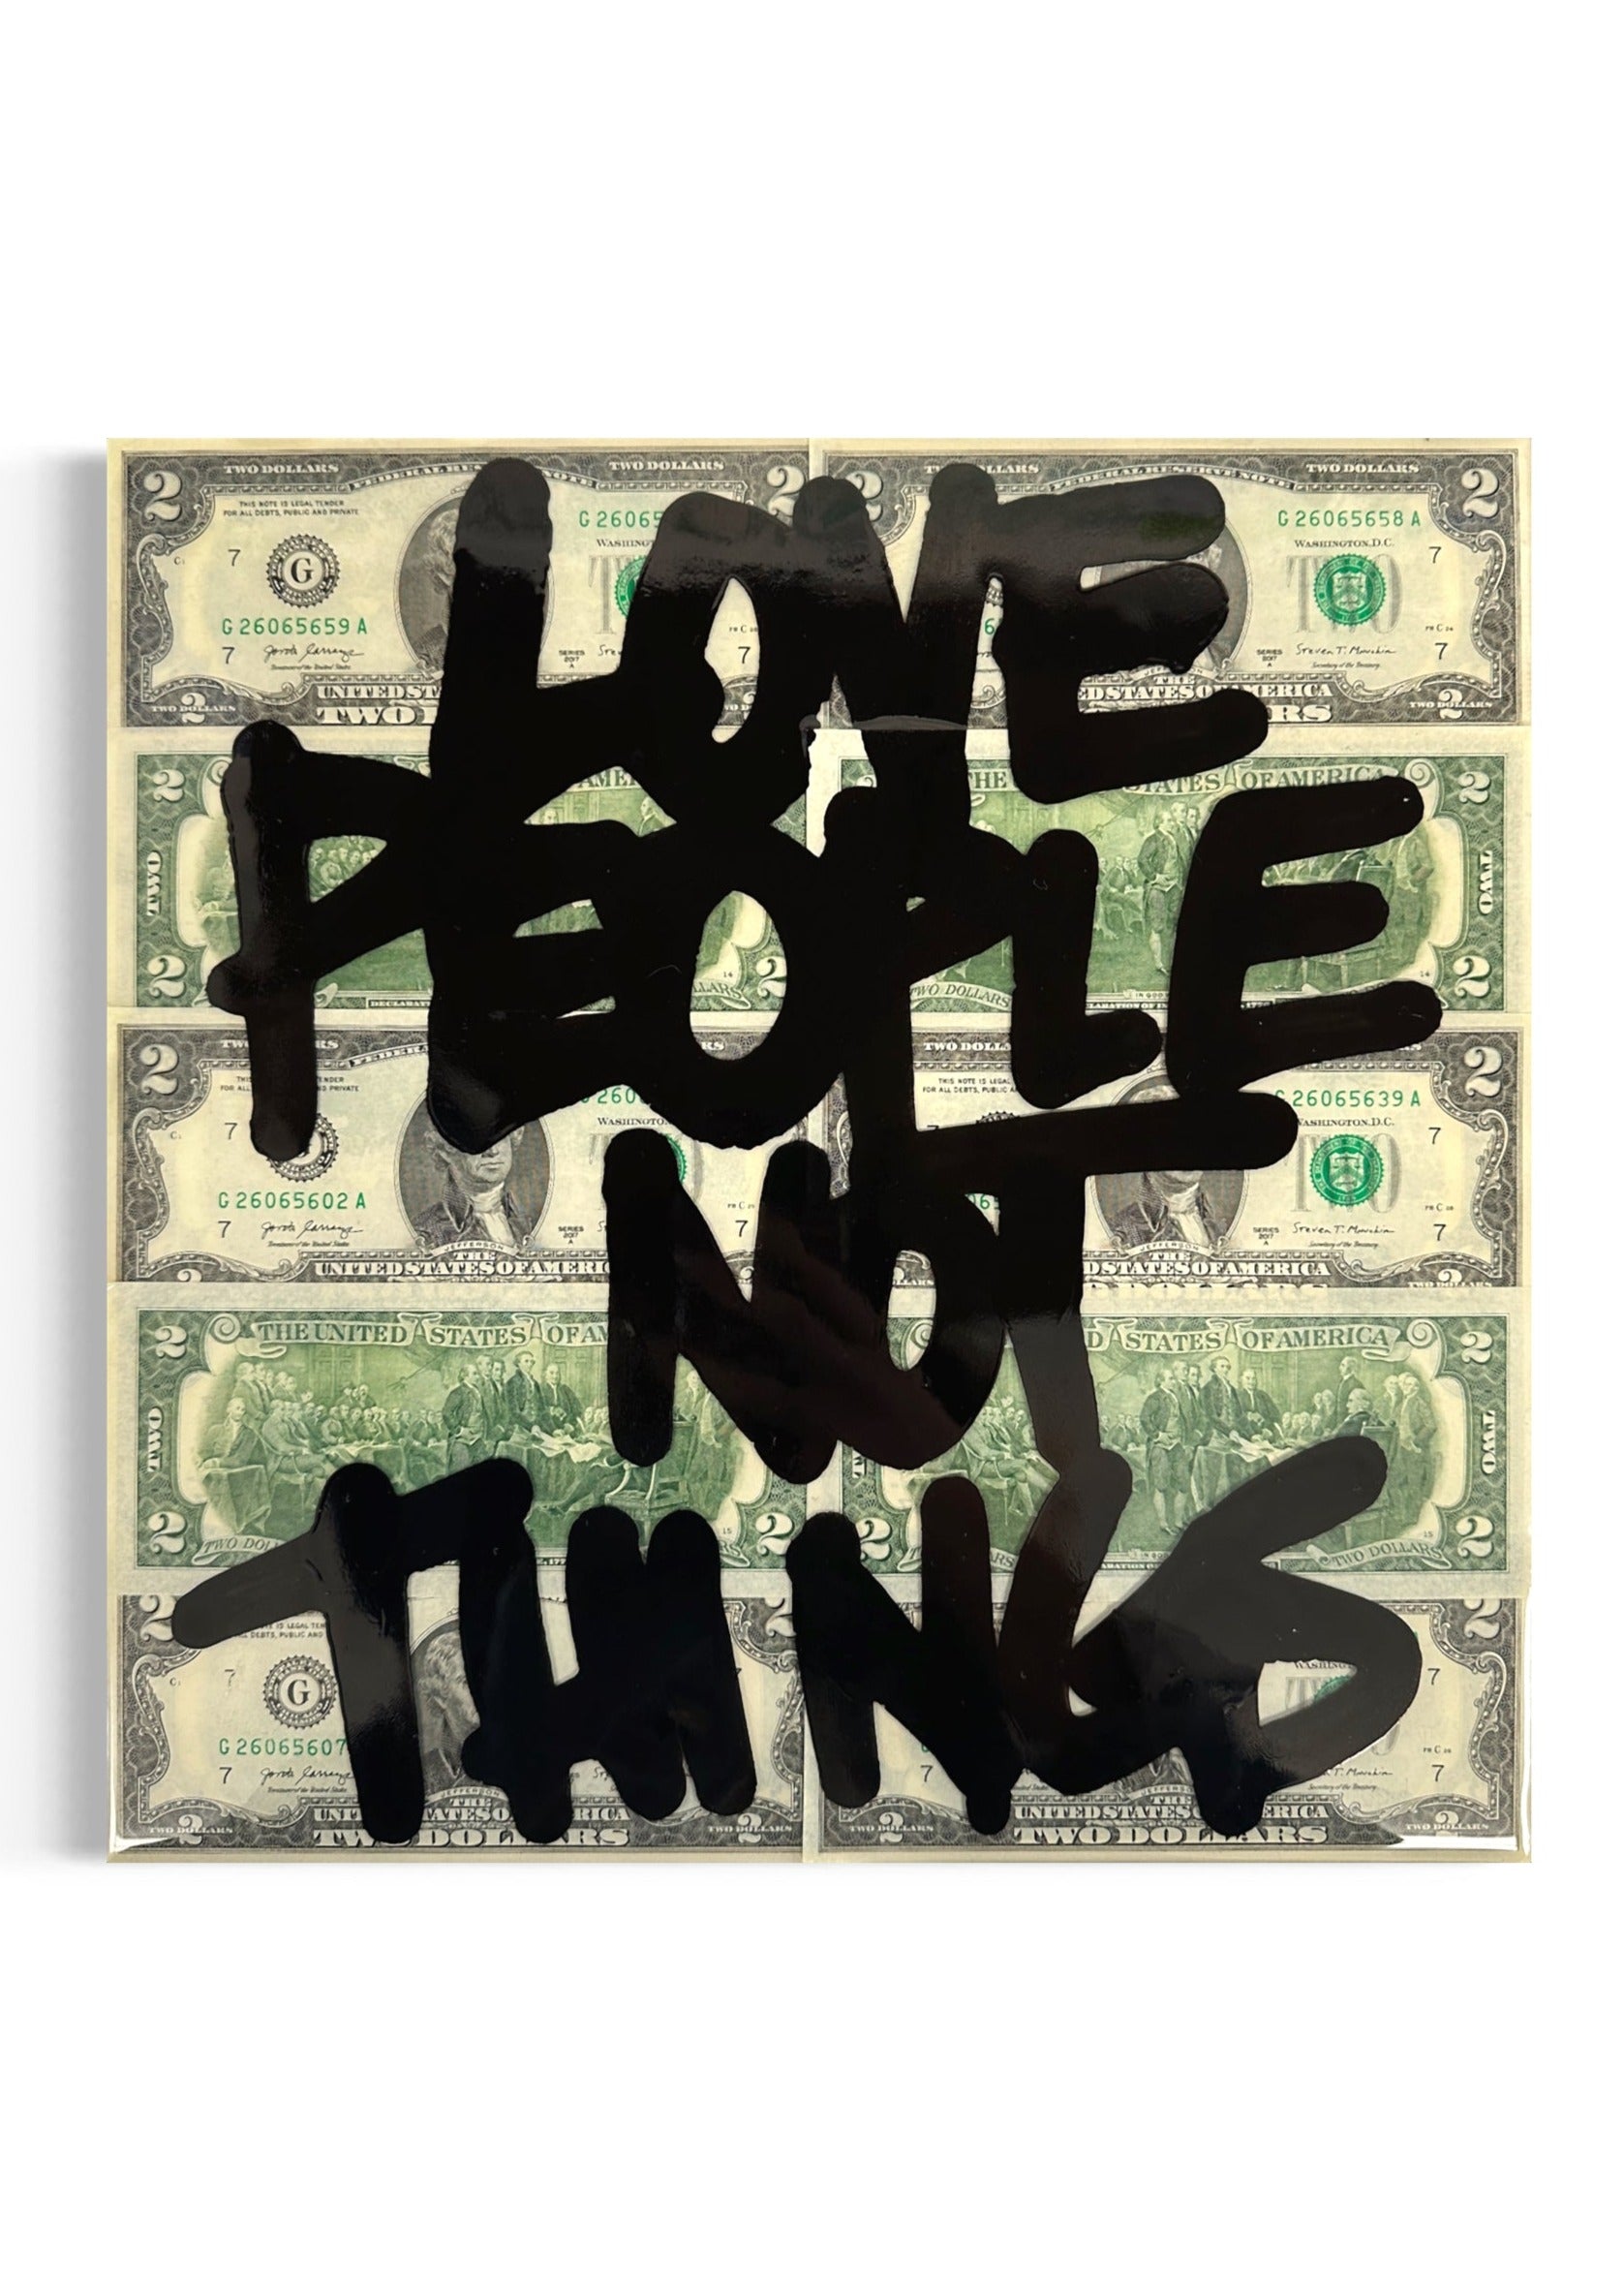 "$2 Love People Not Things"